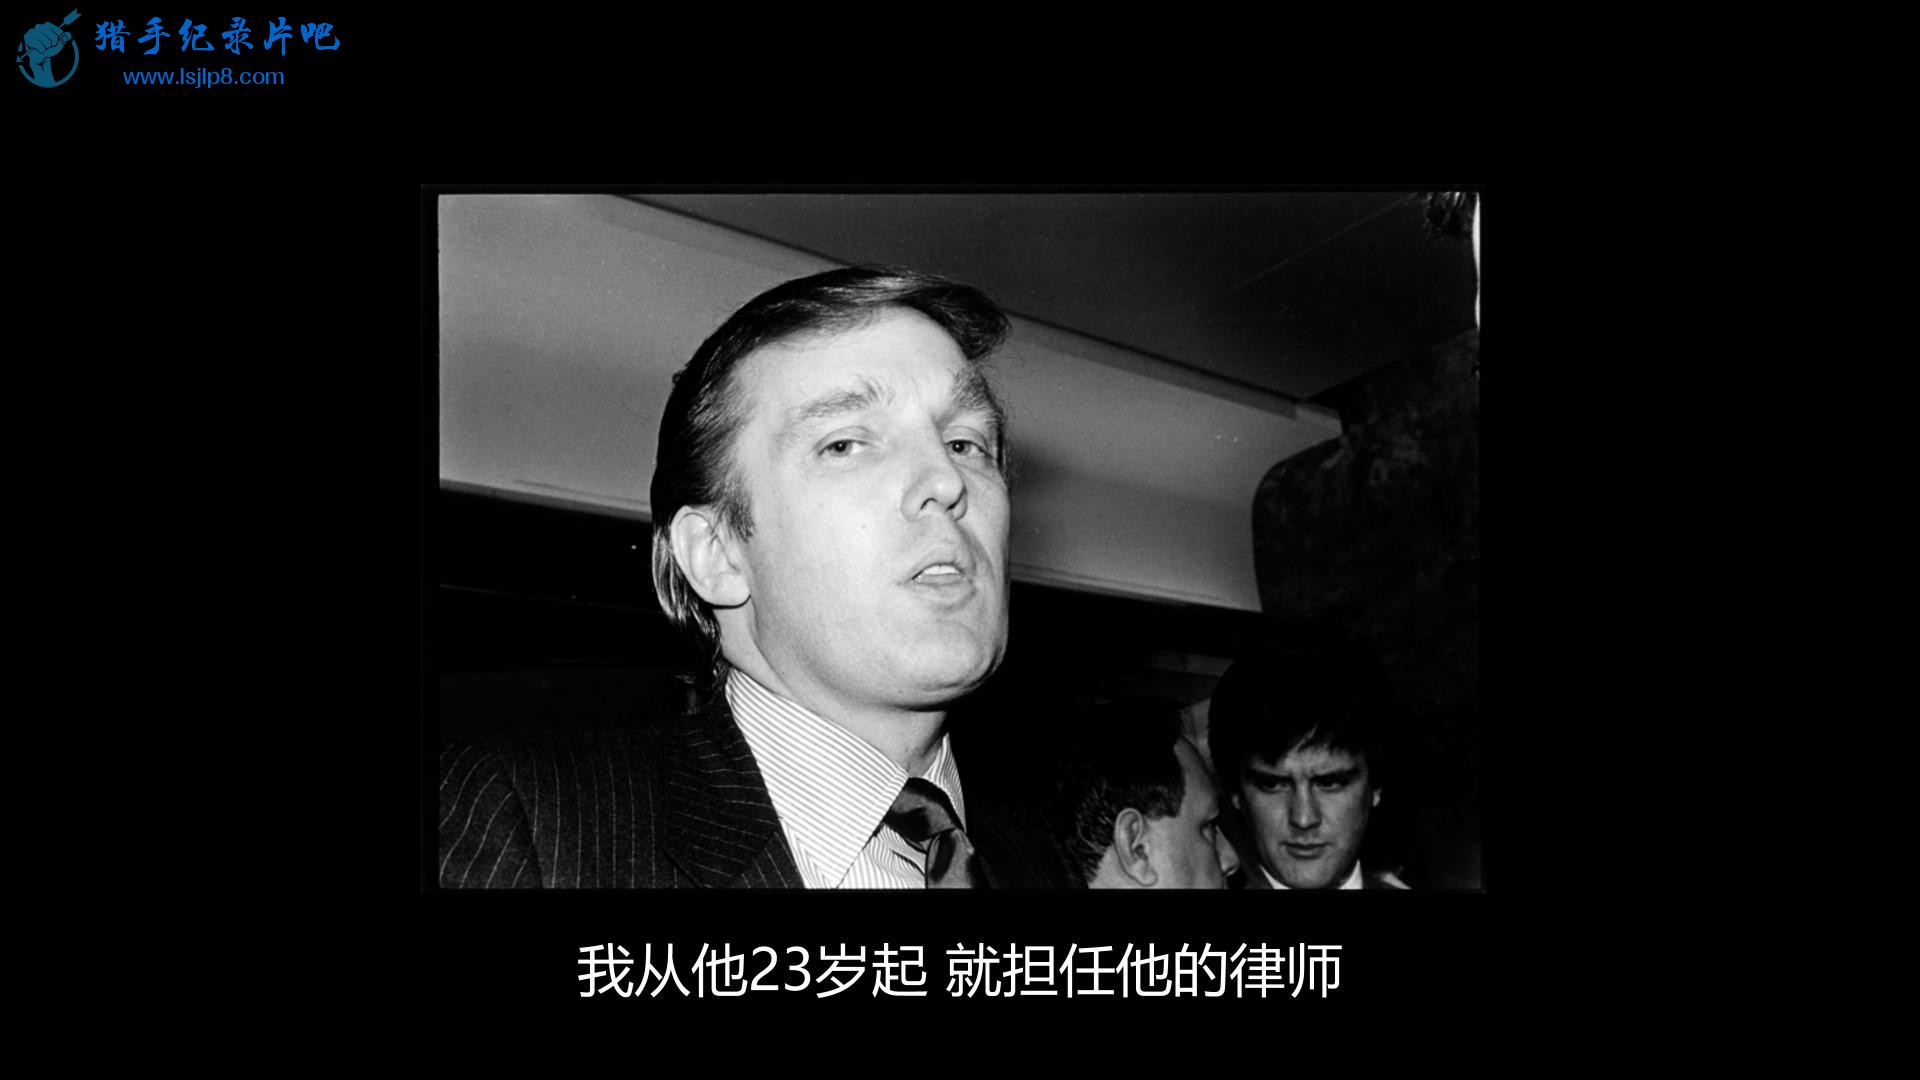 Trump - An American Dream S01E01 Manhattan 1080p Netflix WEB-DL DD  2.0 x264-Tro.jpg